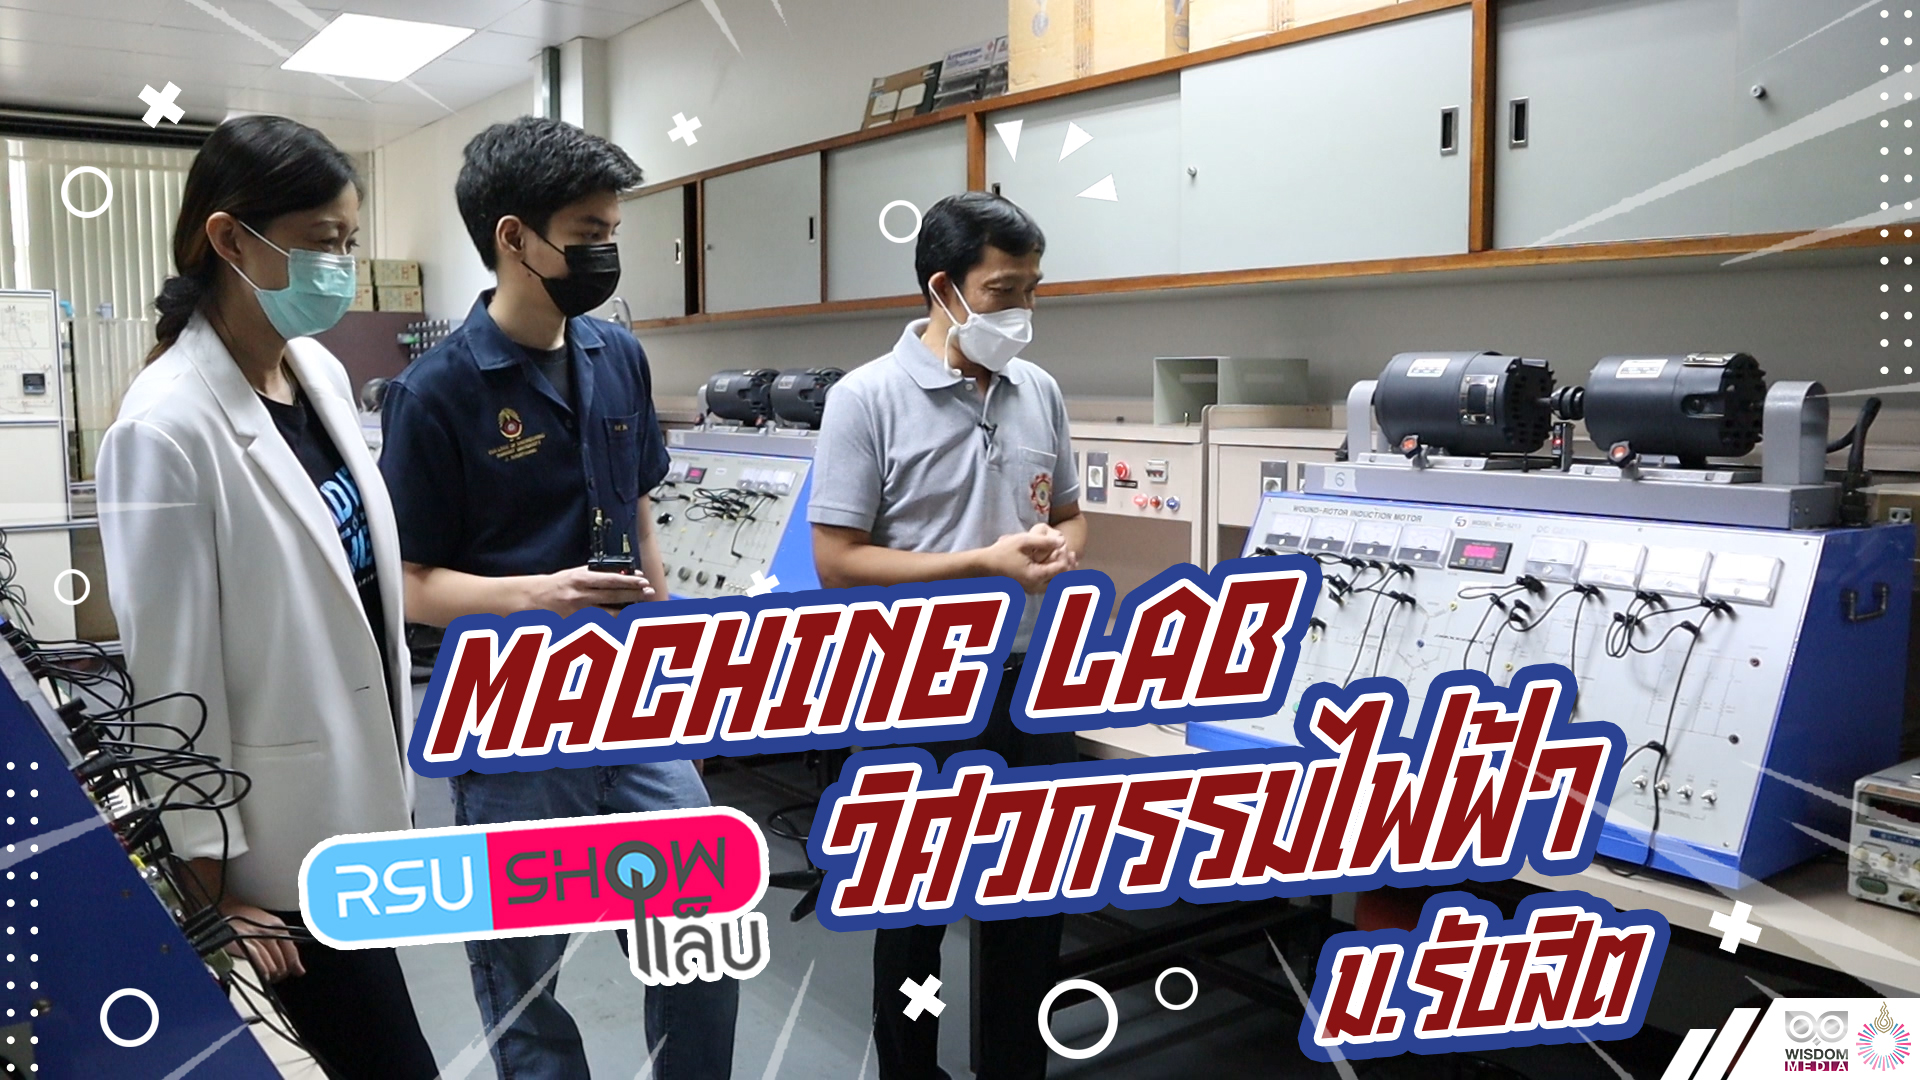 RSUSHOWแล็บ : Machine Lab วิศวกรรมไฟฟ้า ม.รังสิต